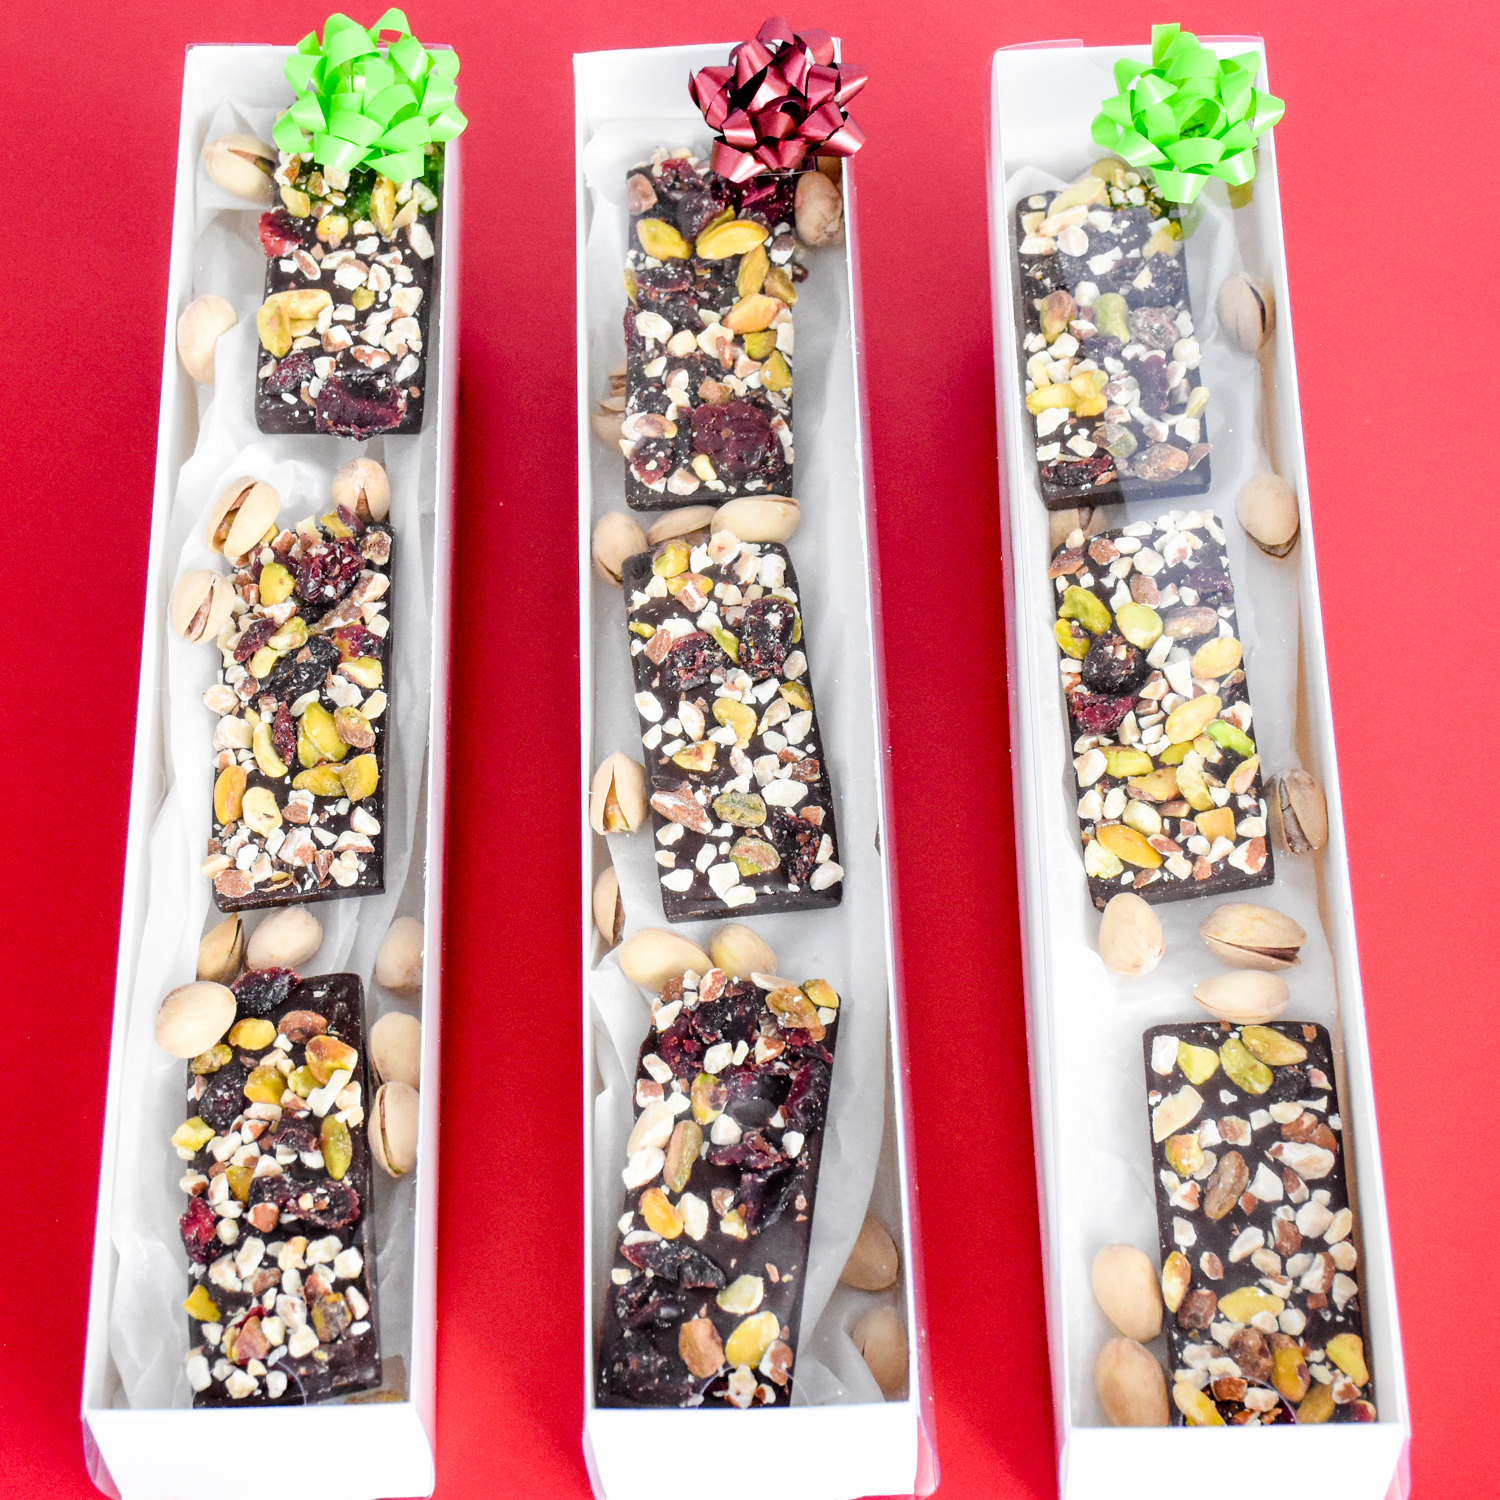 Neighbor Christmas Gift: JOJO’S Chocolate Bars